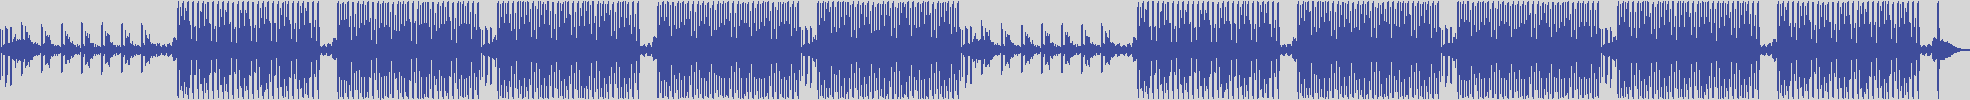 nf_boyz_records [NFY040] Mark Markson - New Scopy [God & Iva Mix] audio wave form